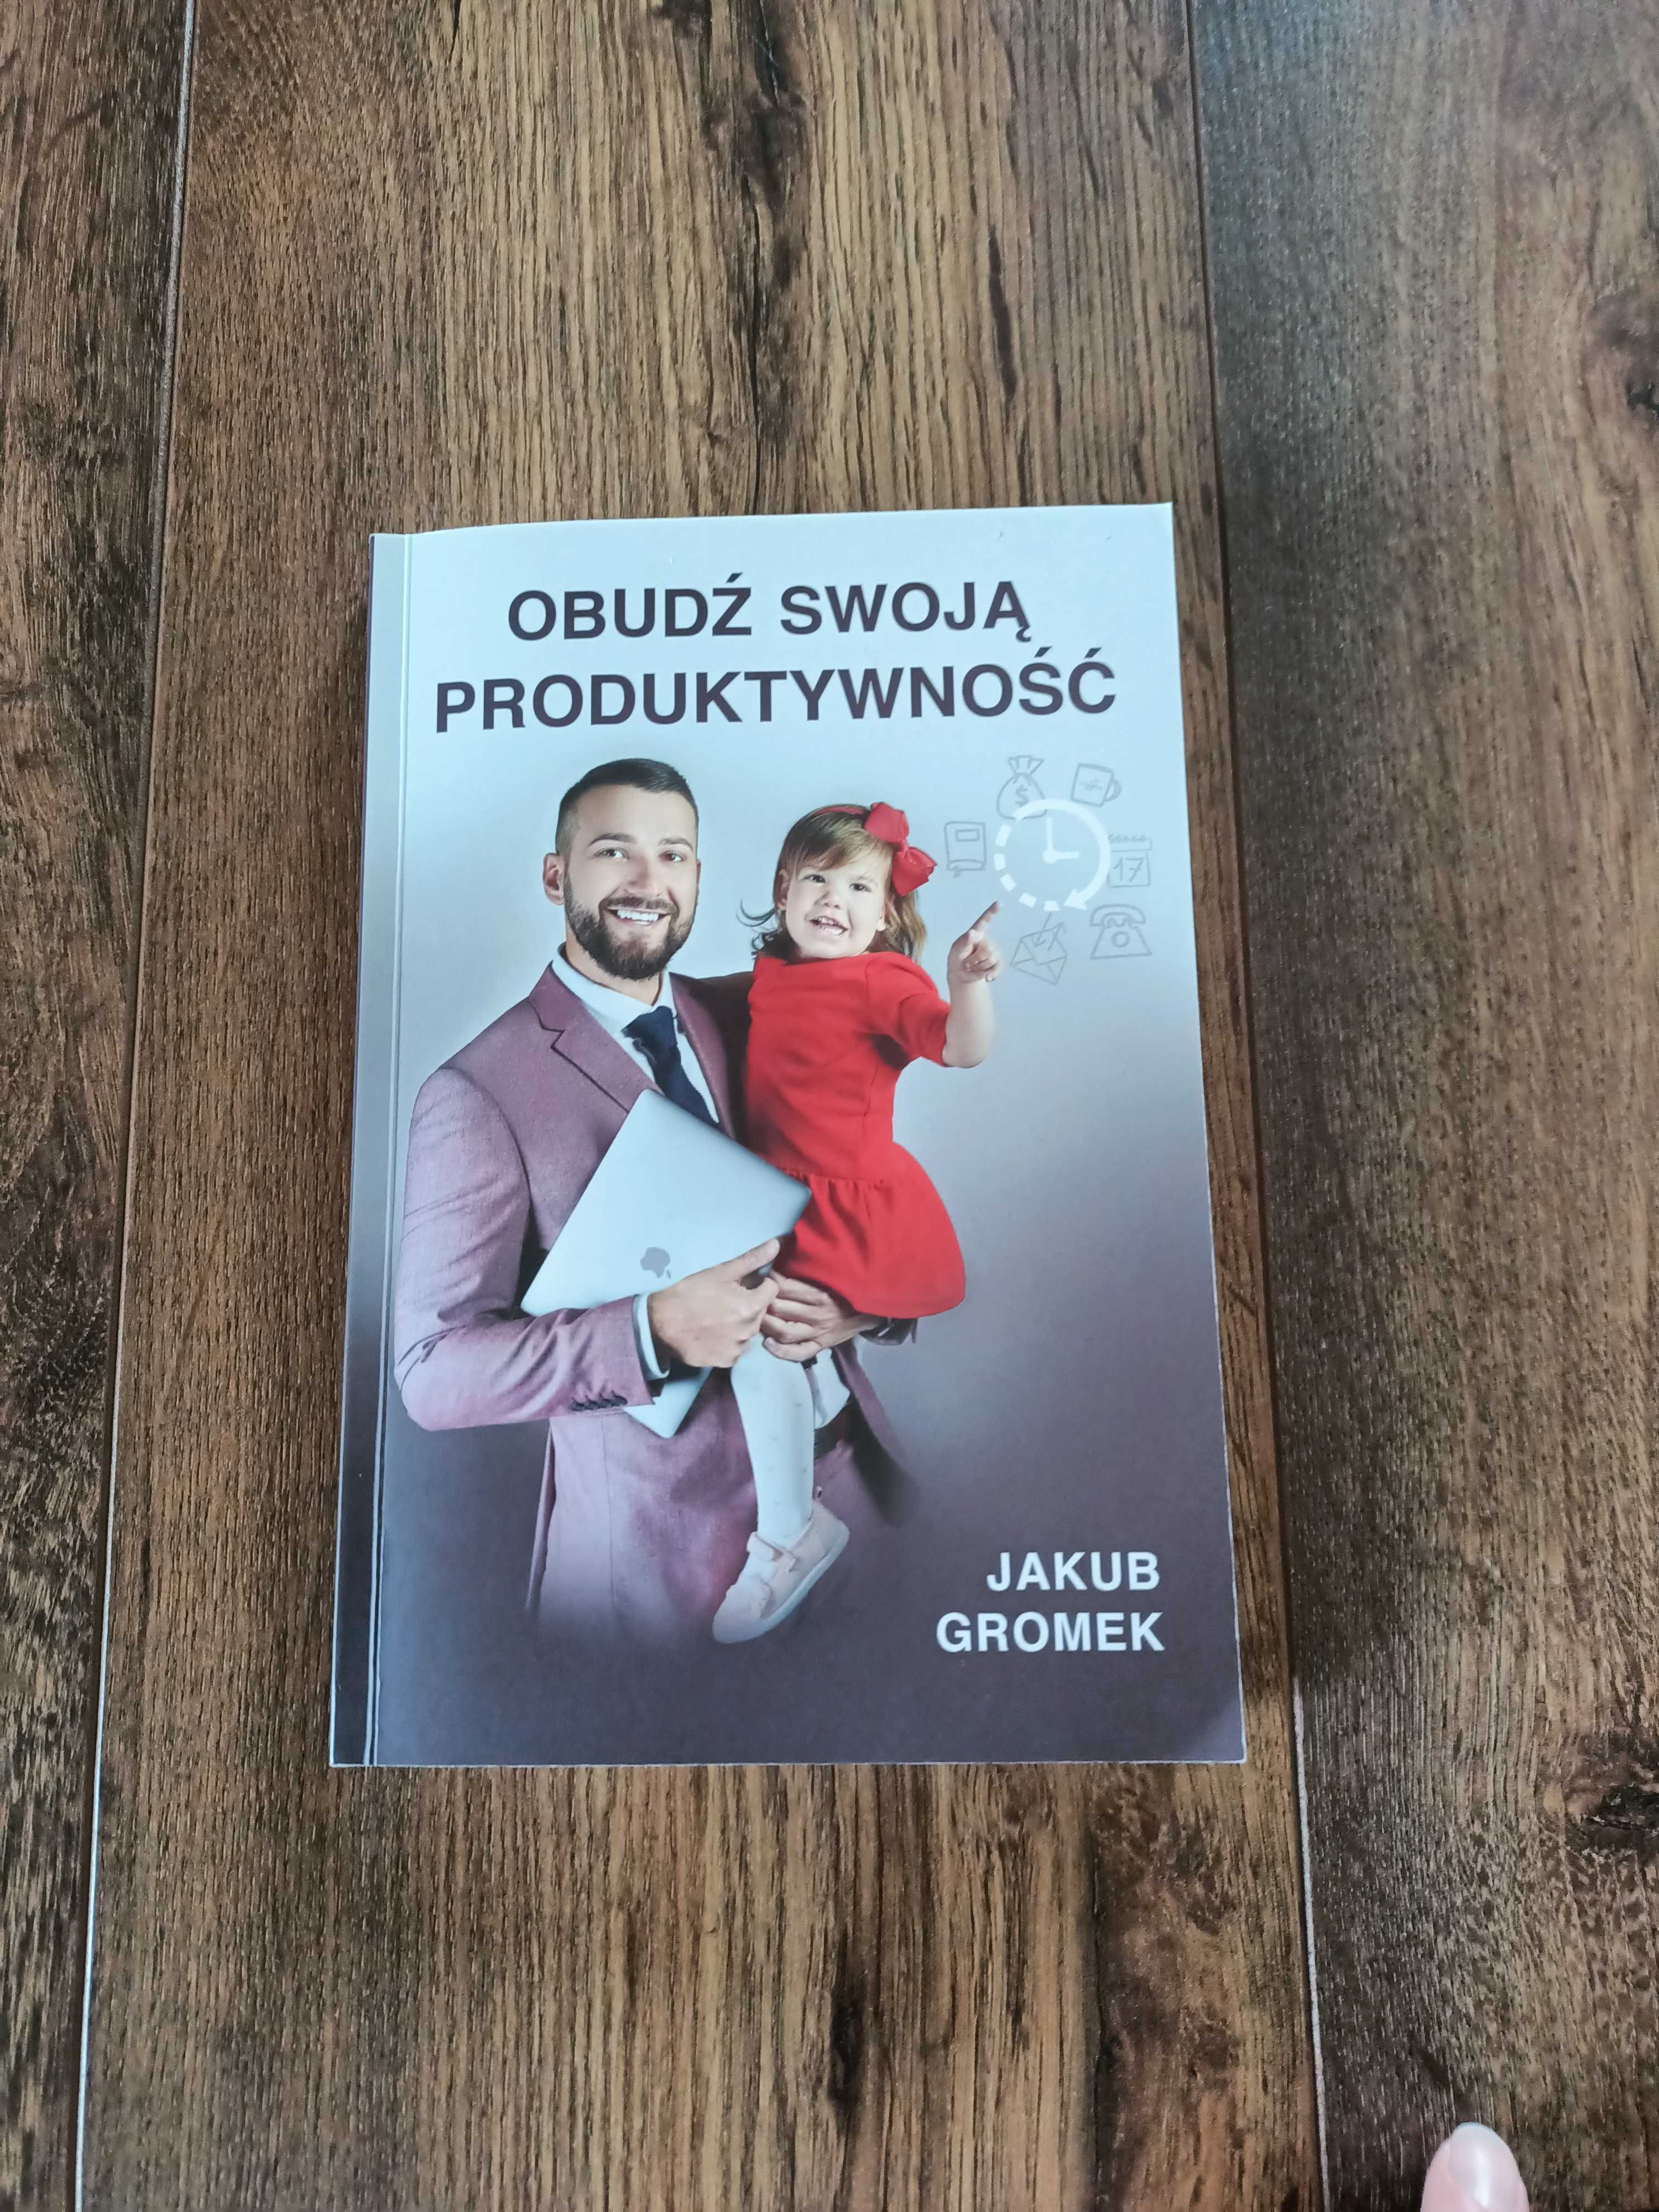 Książka "Obudź swoją produktywność" Jakub Gromek